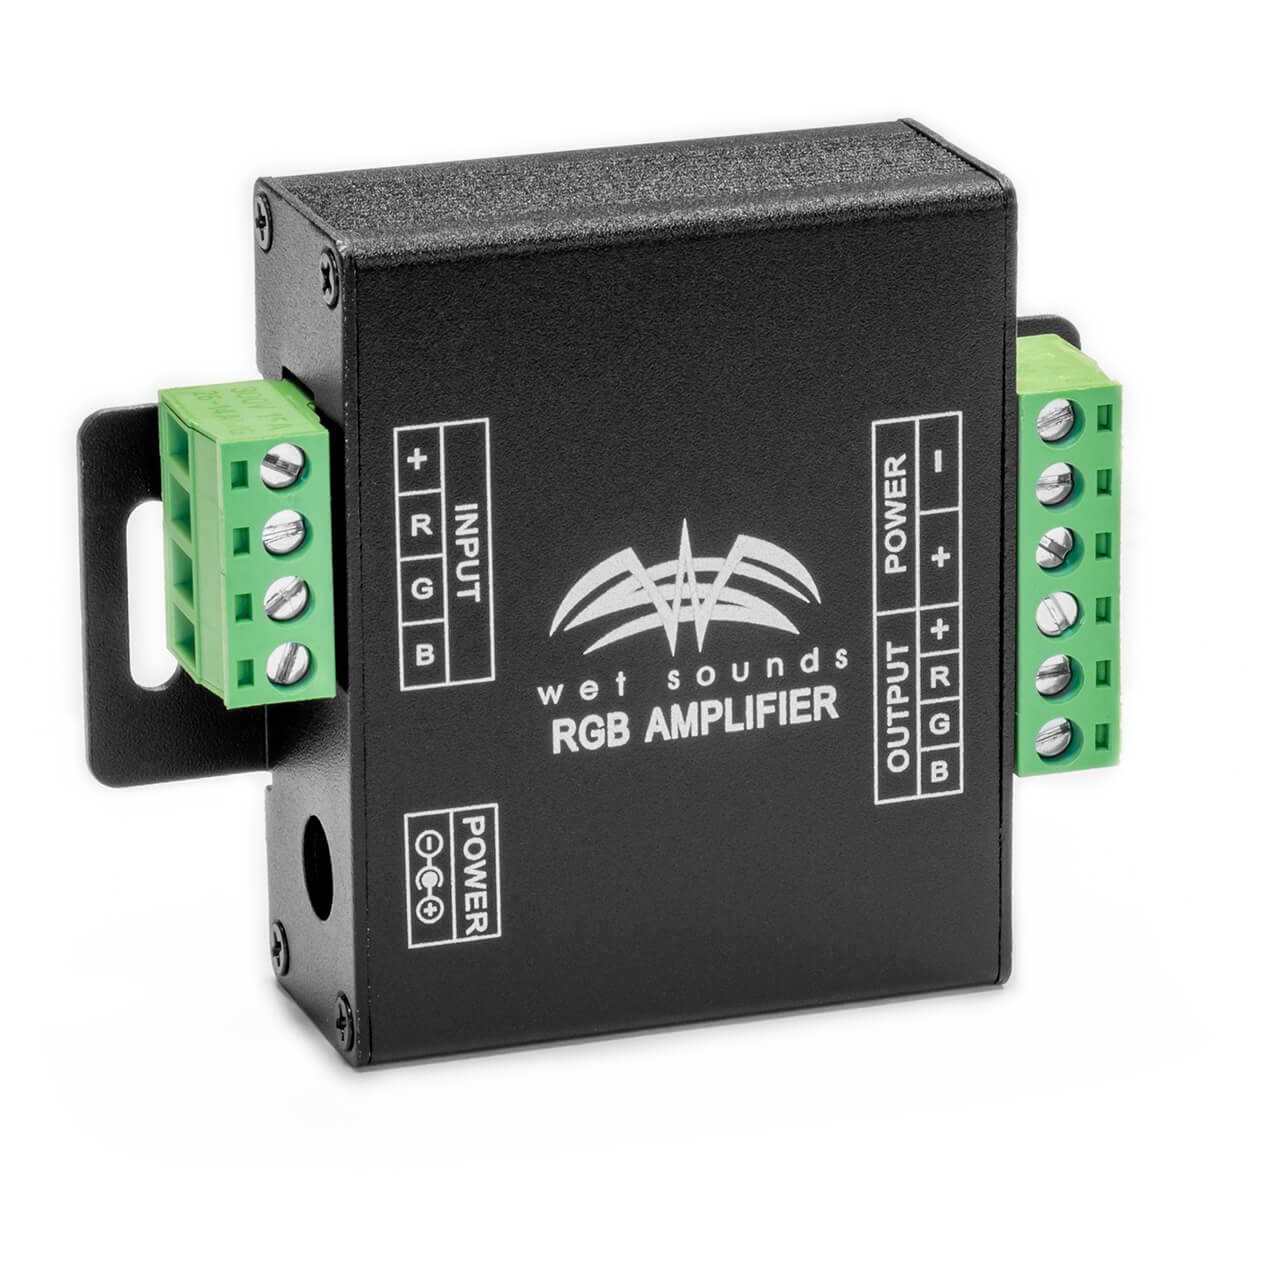 Amplificador de iluminación LED RGB Wet Sounds RGB AMPLIFIER para la expansión de su controlador RF-RGB